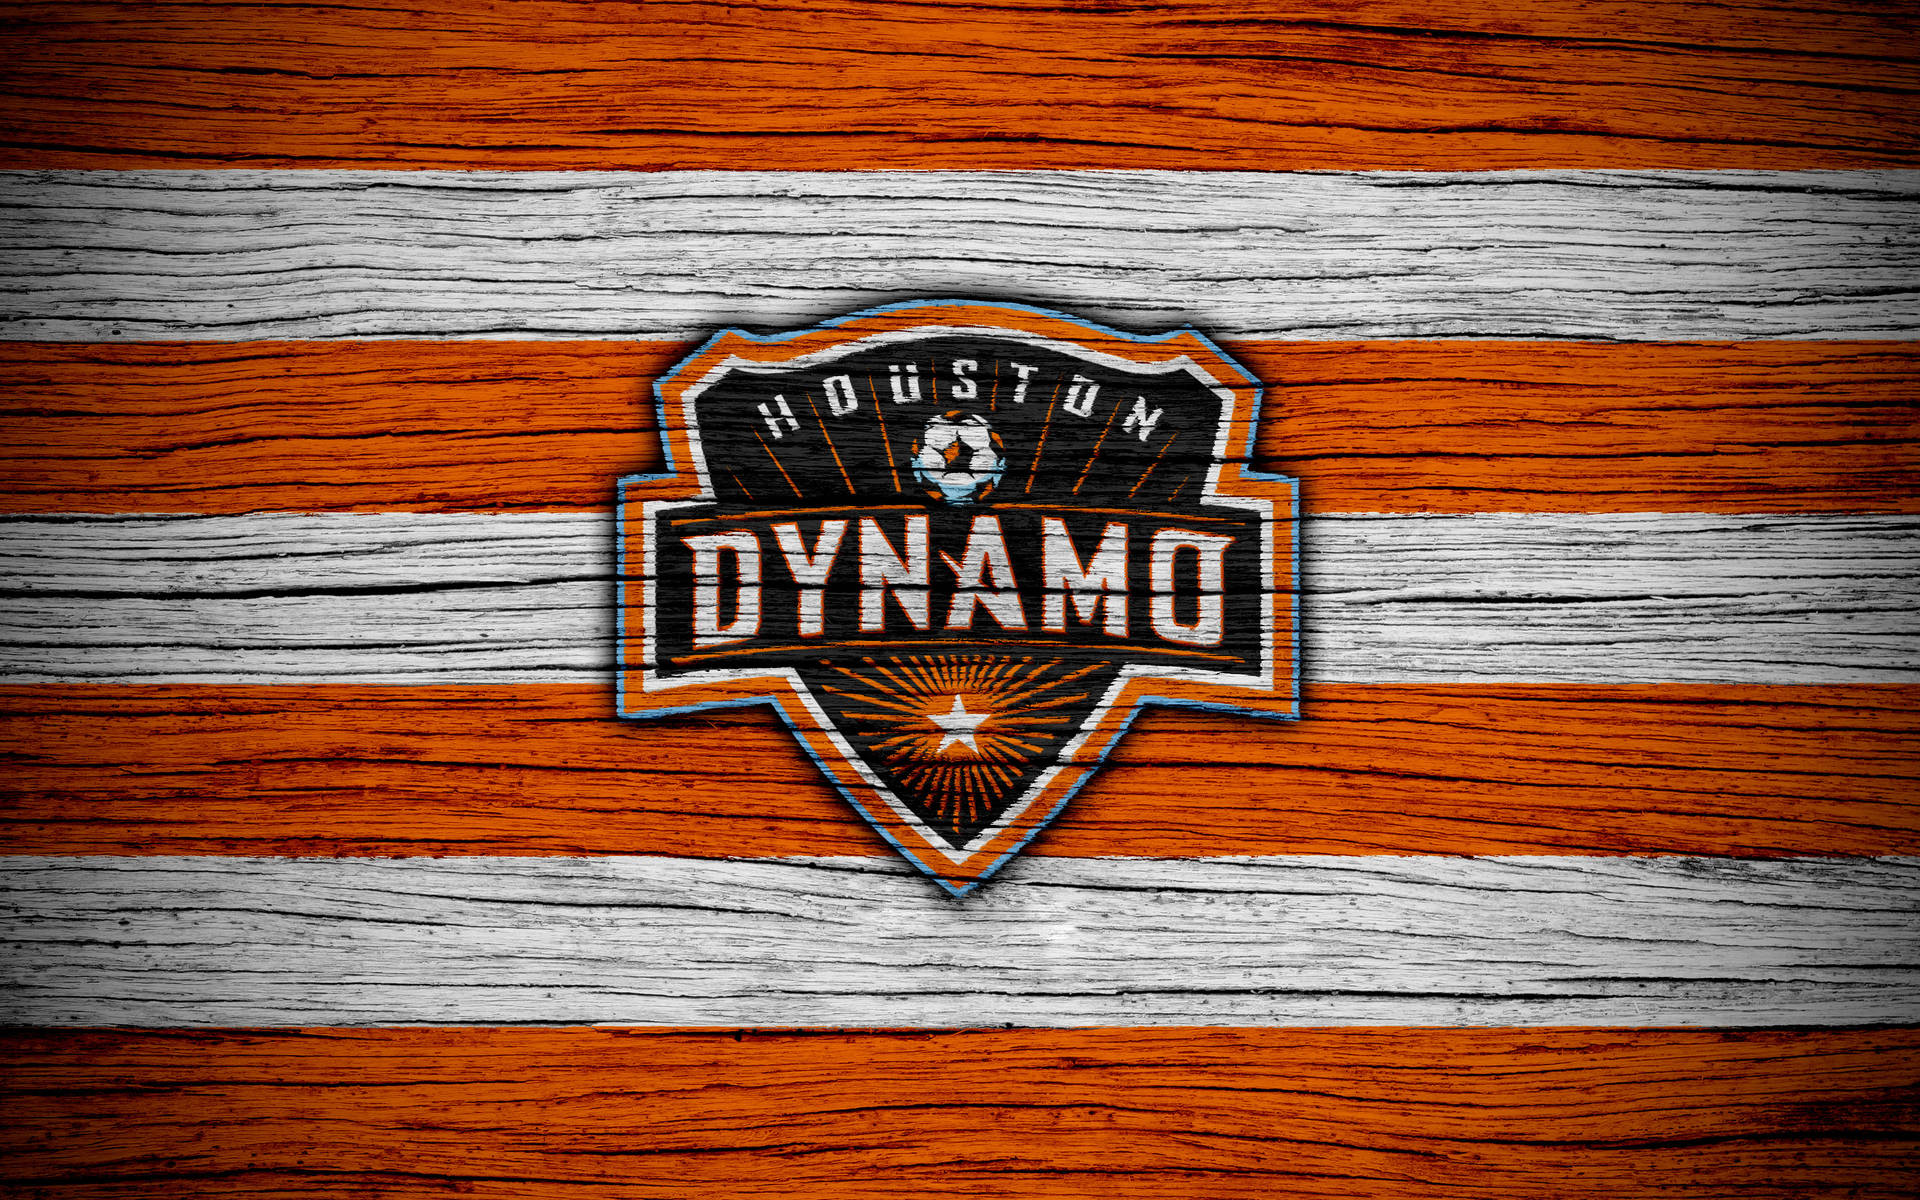 Free Houston Dynamo Wallpaper Downloads, [100+] Houston Dynamo Wallpapers  for FREE 